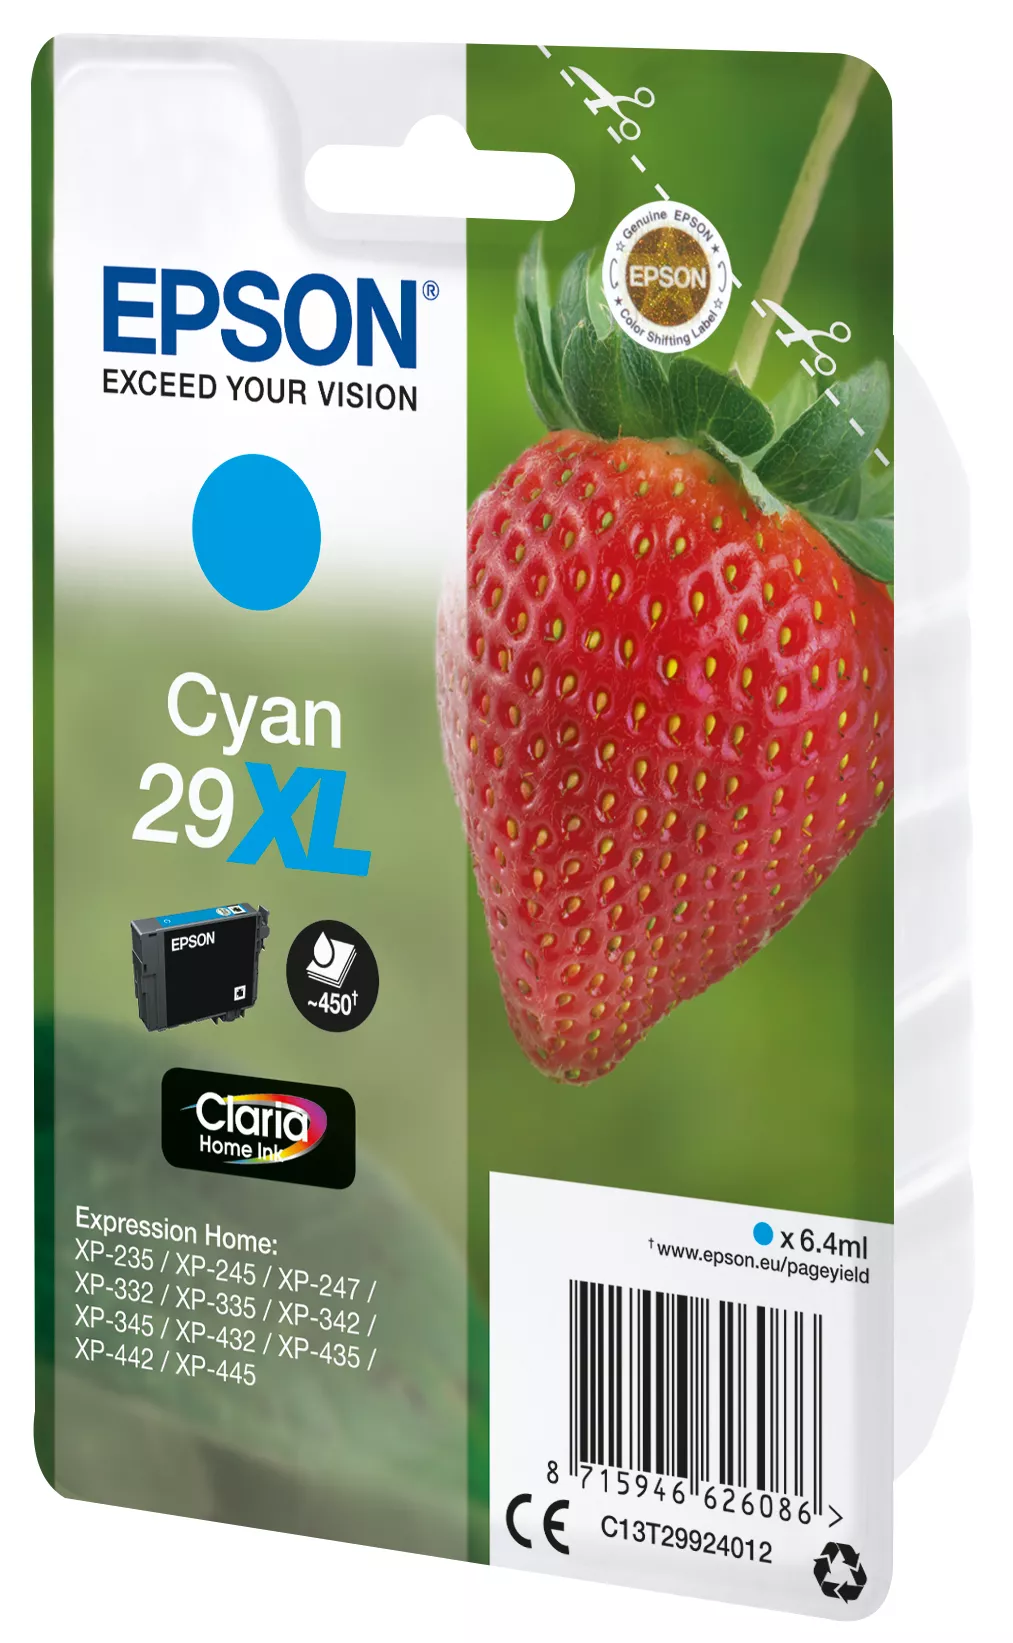 Vente EPSON Cartouche Fraise Encre Claria Home Cyan XL Epson au meilleur prix - visuel 2